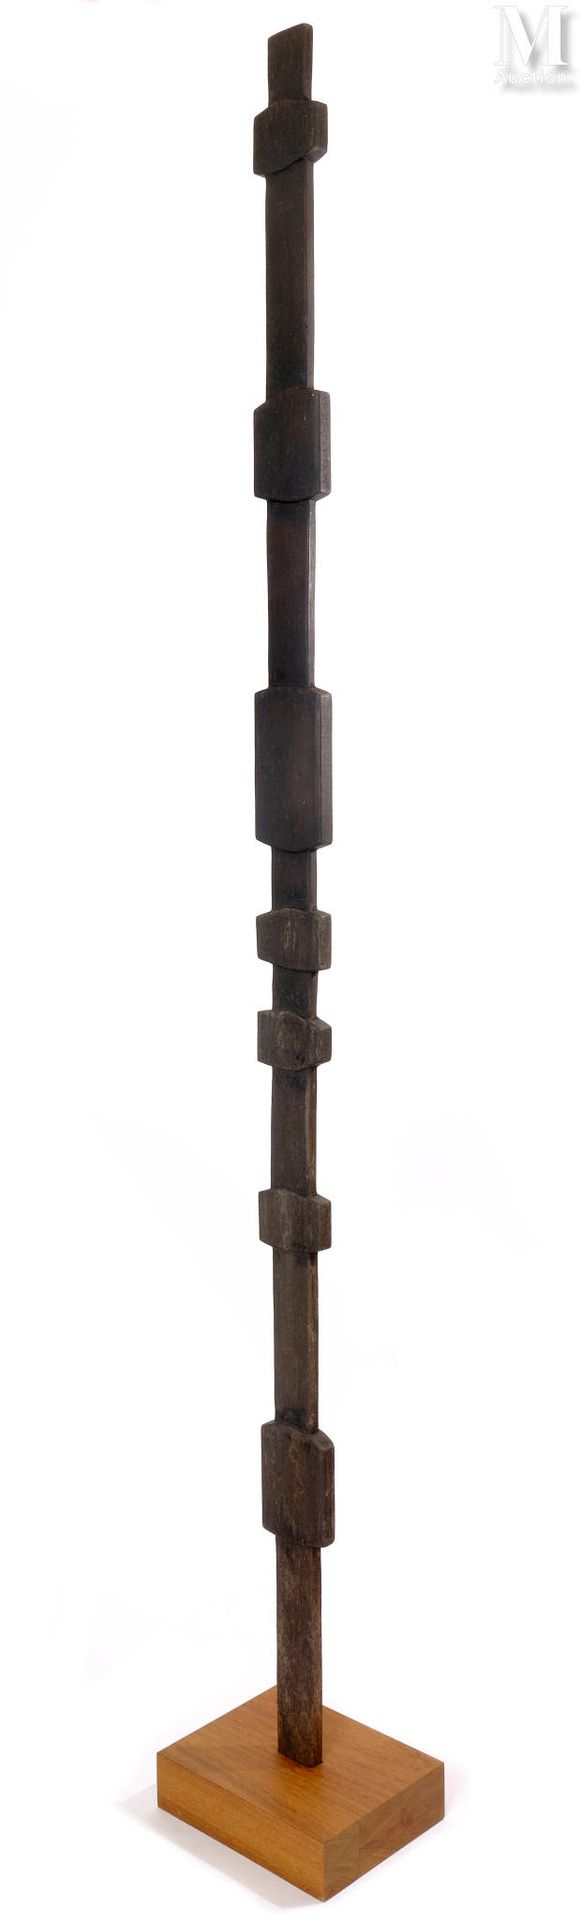 François STAHLY (1911-2006) Ohne Titel

Holz geschnitzt
Höhe: 232,5 cm (einschli&hellip;